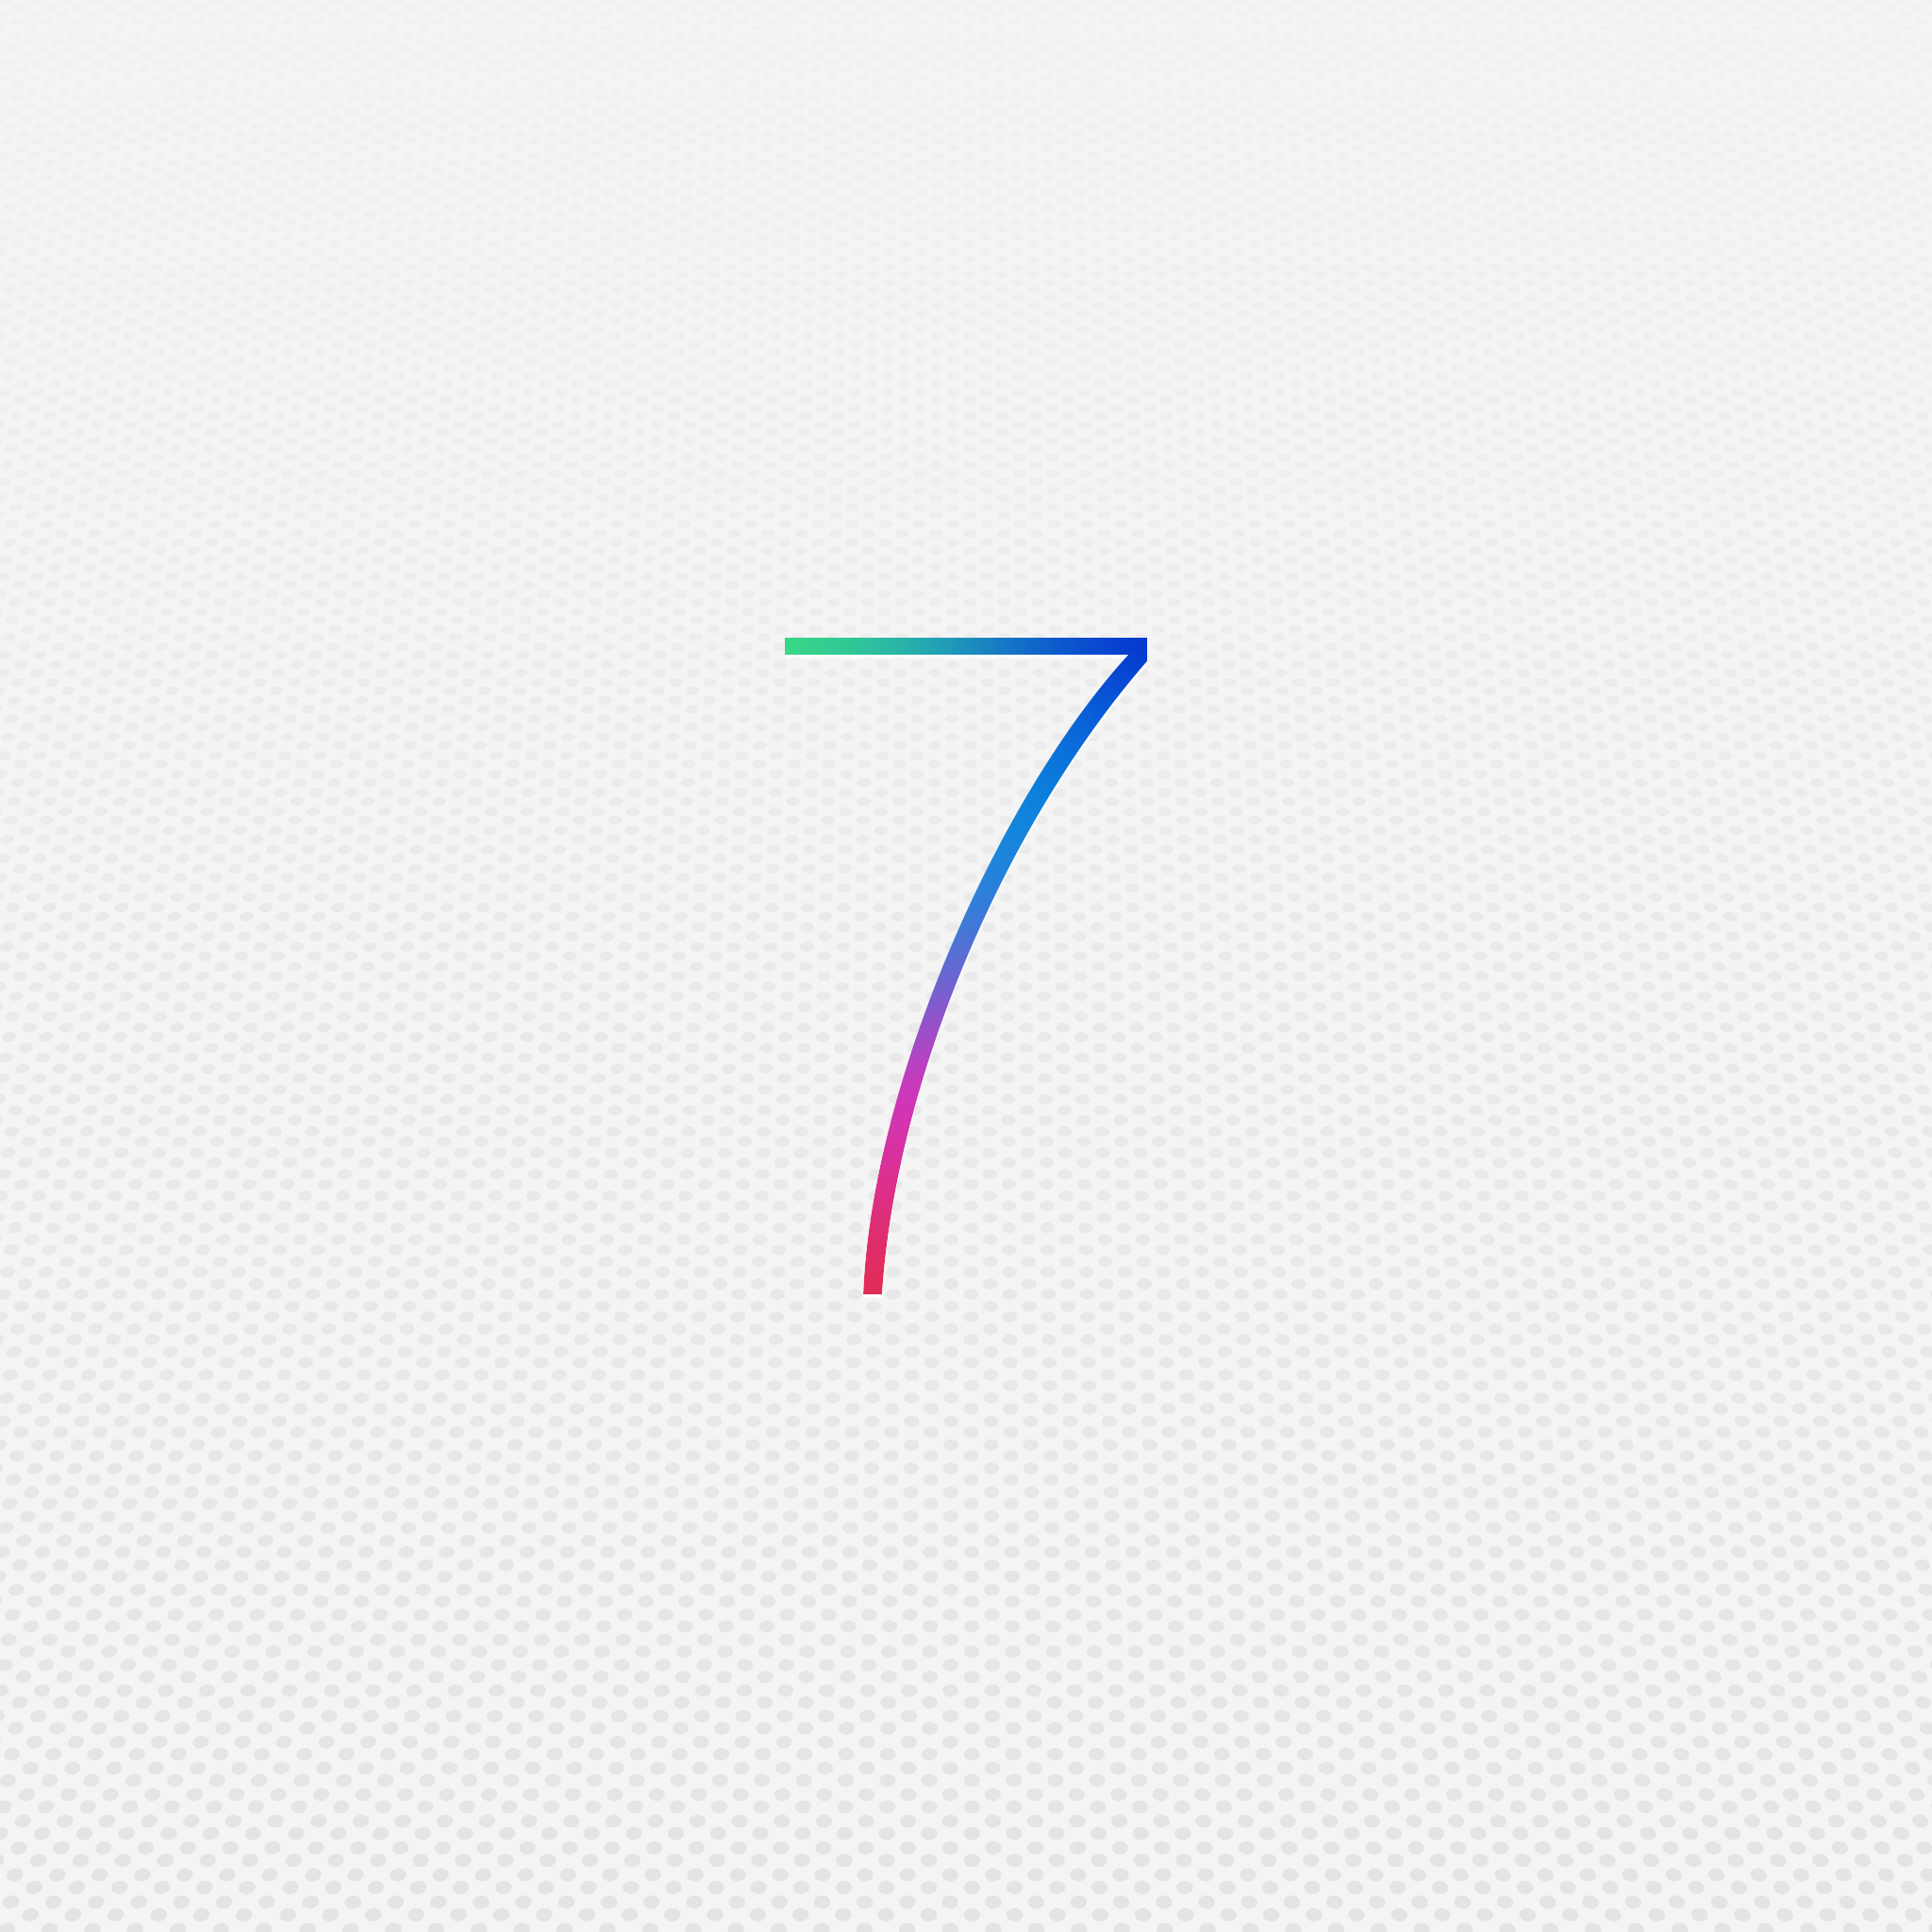 iOS 7 Beta 2 ile Gelen İyileştirmeler ve Yenilikler